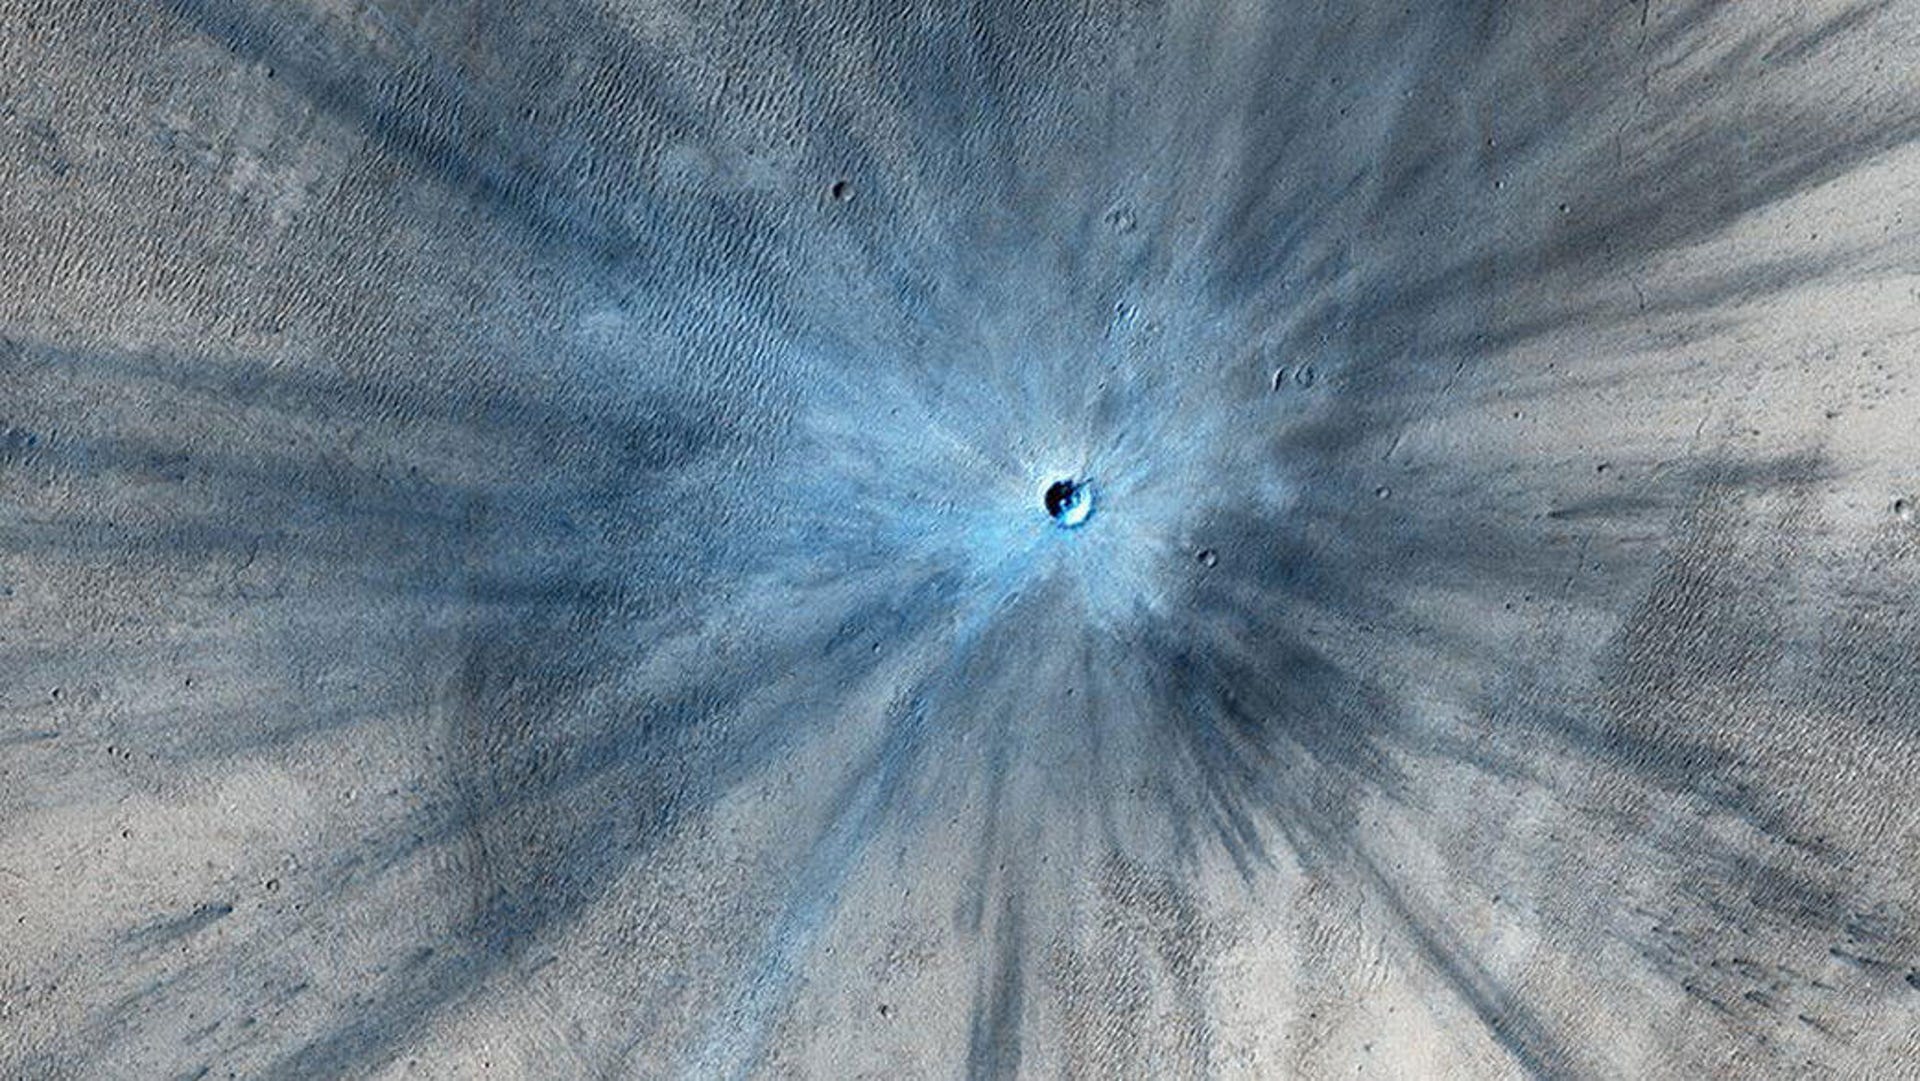 4-impact-crater-pia17932-1041